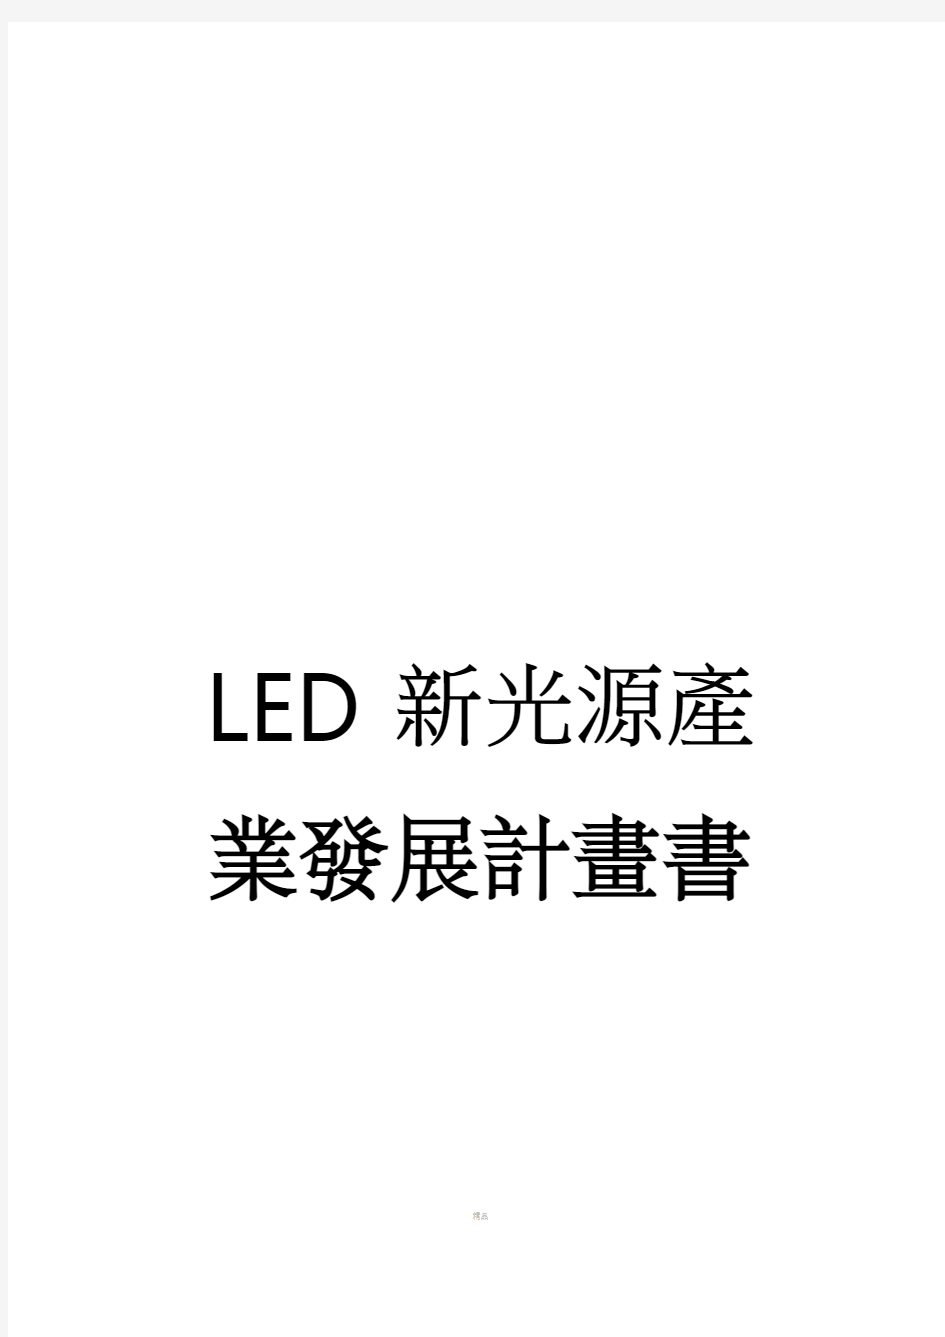 LED新光源产业发展计划书